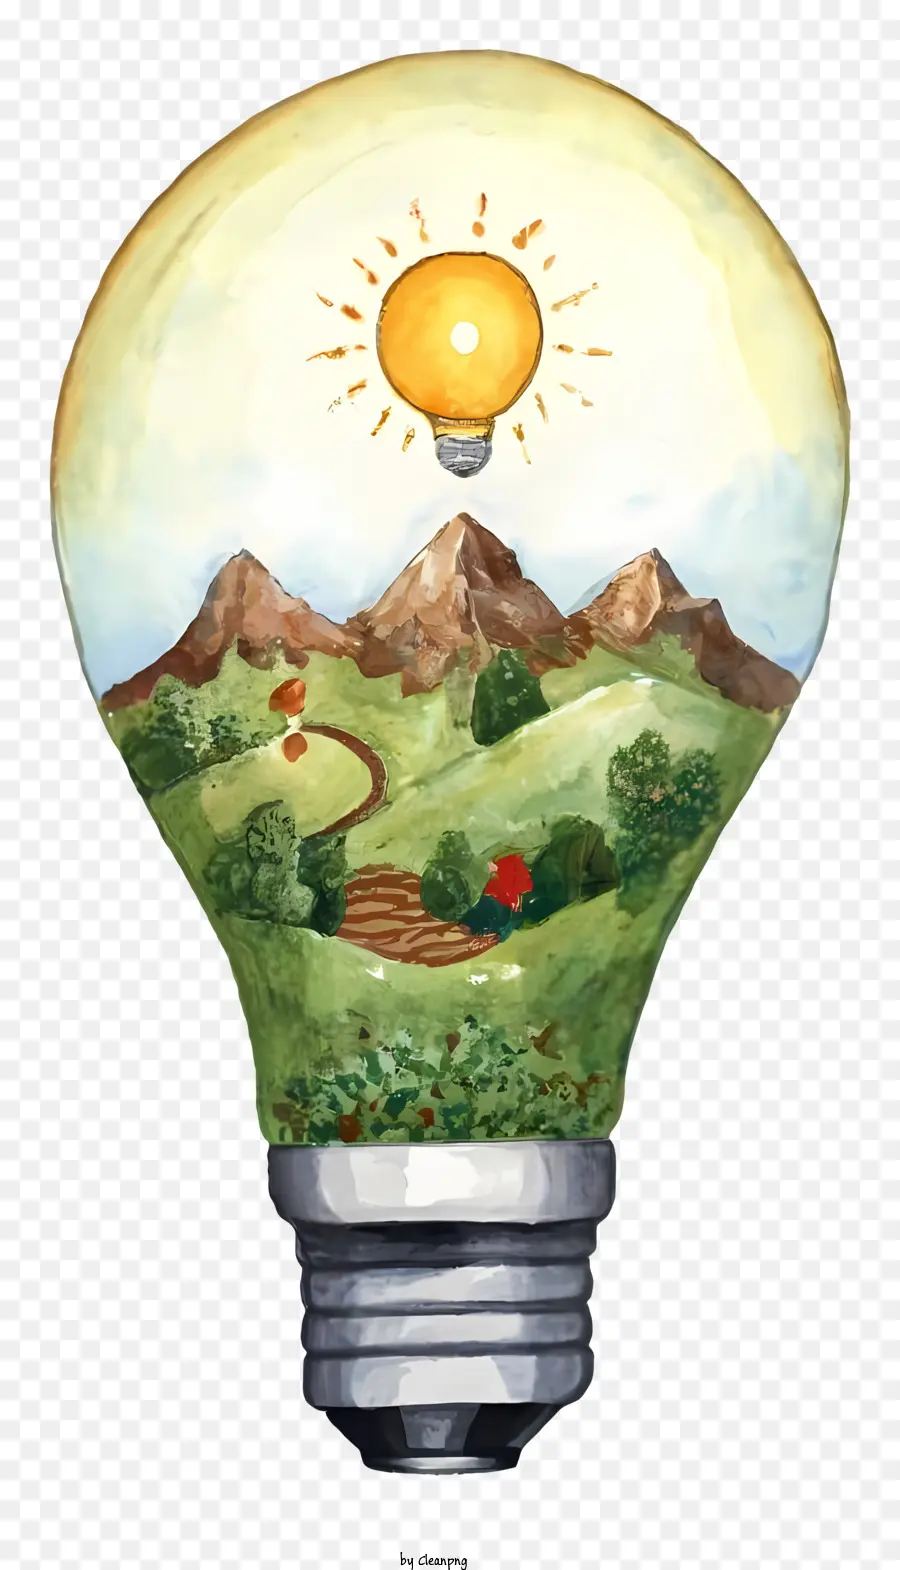 lampadina - Lampadina illuminata con paesaggio ad acquerello simboleggia la positività e la creatività